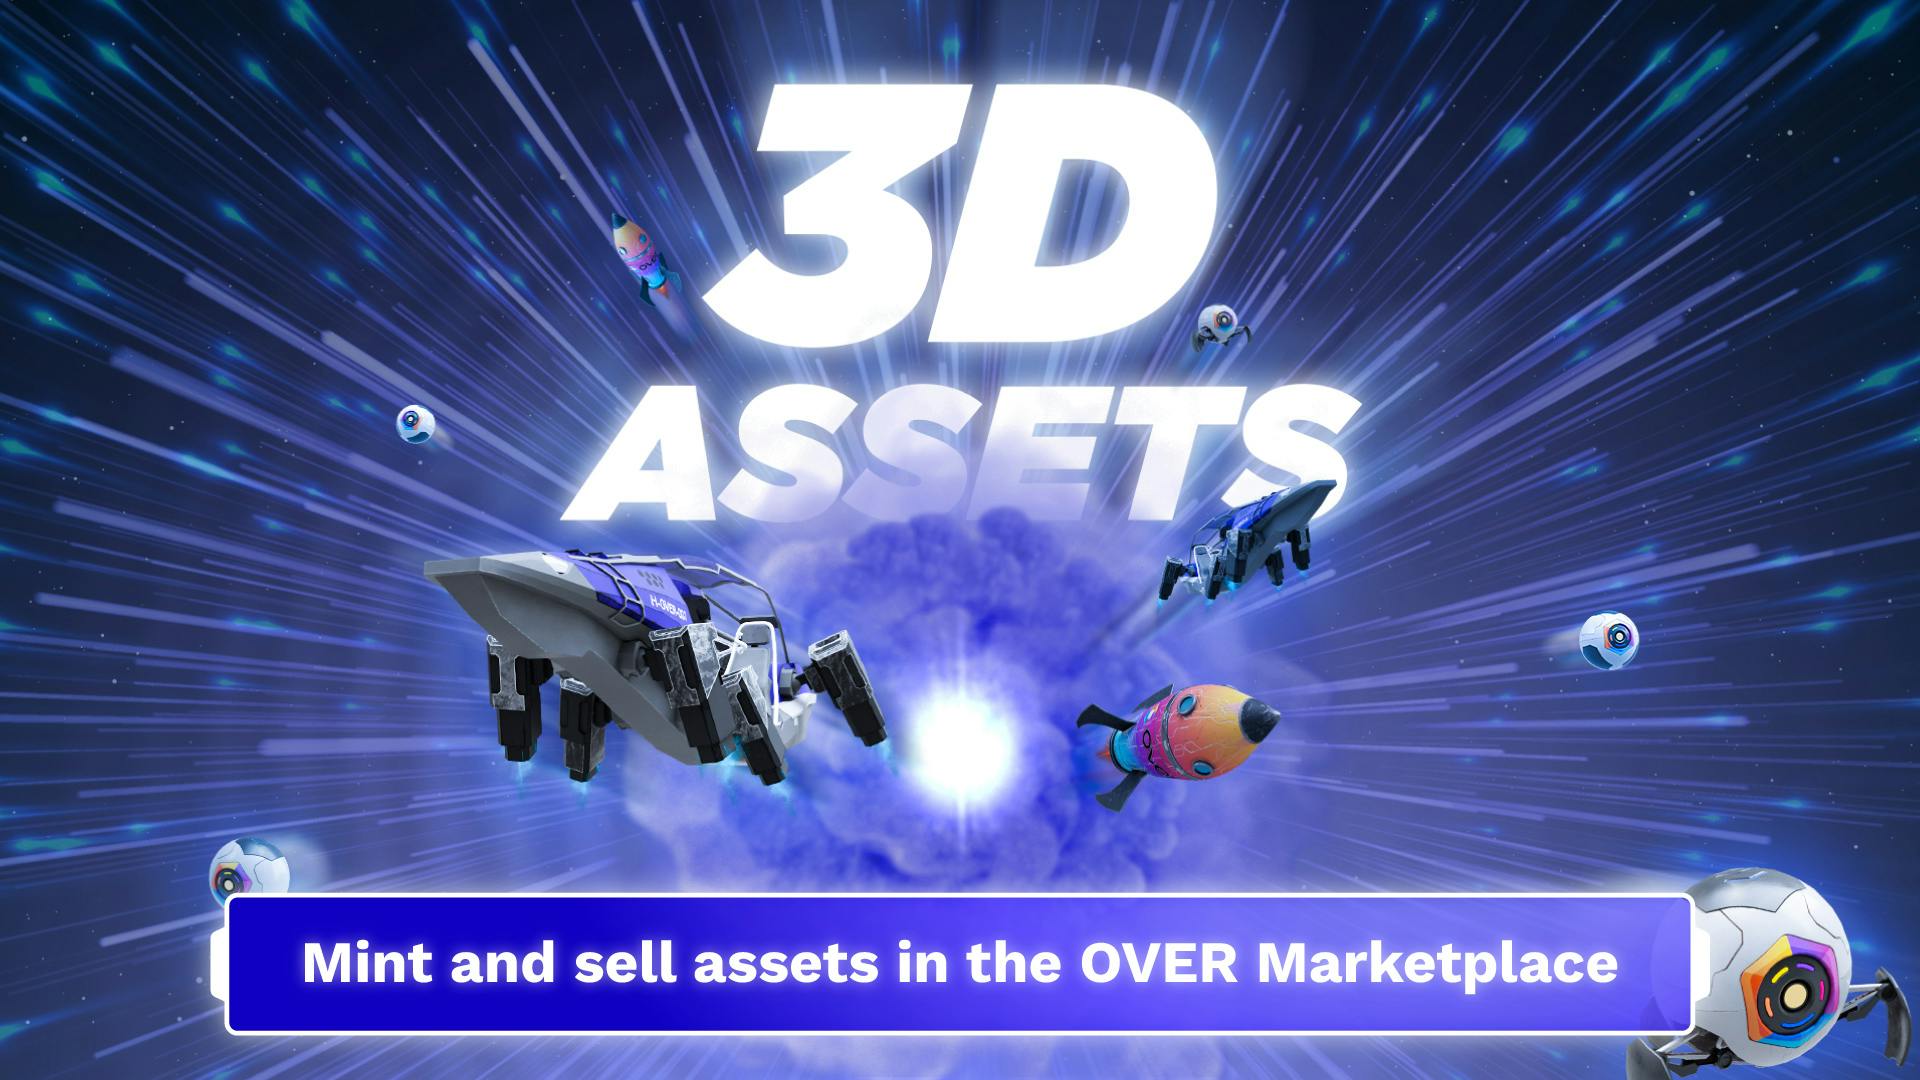 Les assets digitaux 3D peuvent désormais être mintés et vendus sur la place de marché OVER.